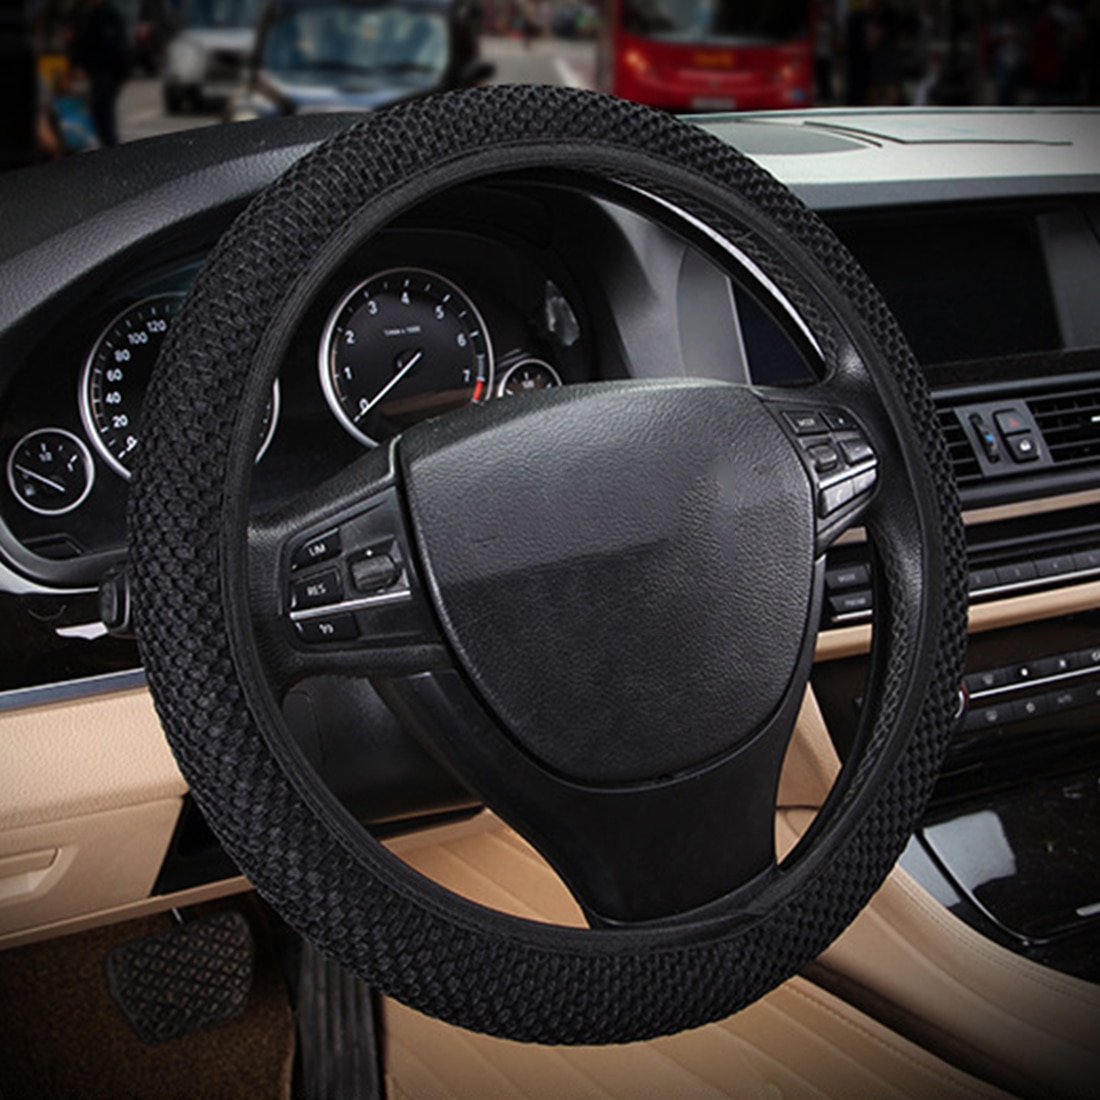 Steering Wheel Covers Anti-Slip Grip